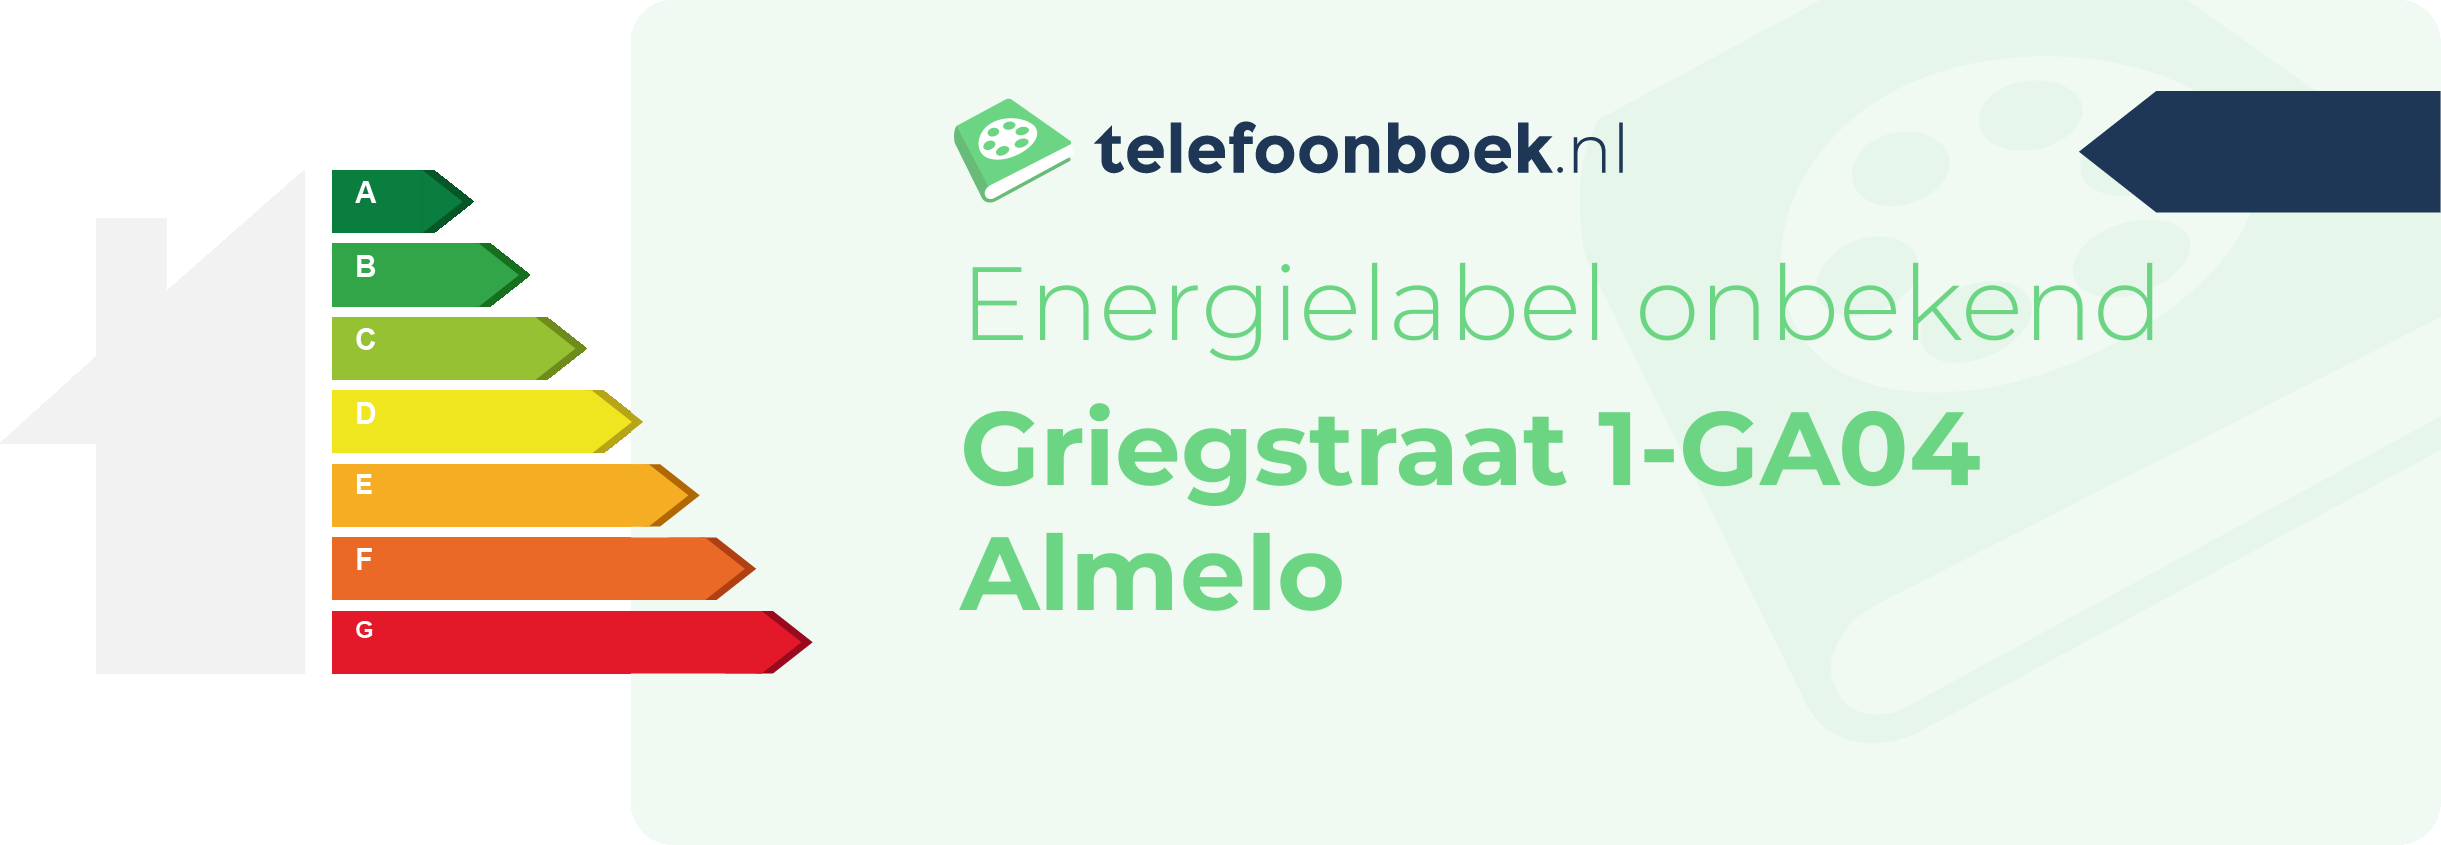 Energielabel Griegstraat 1-GA04 Almelo